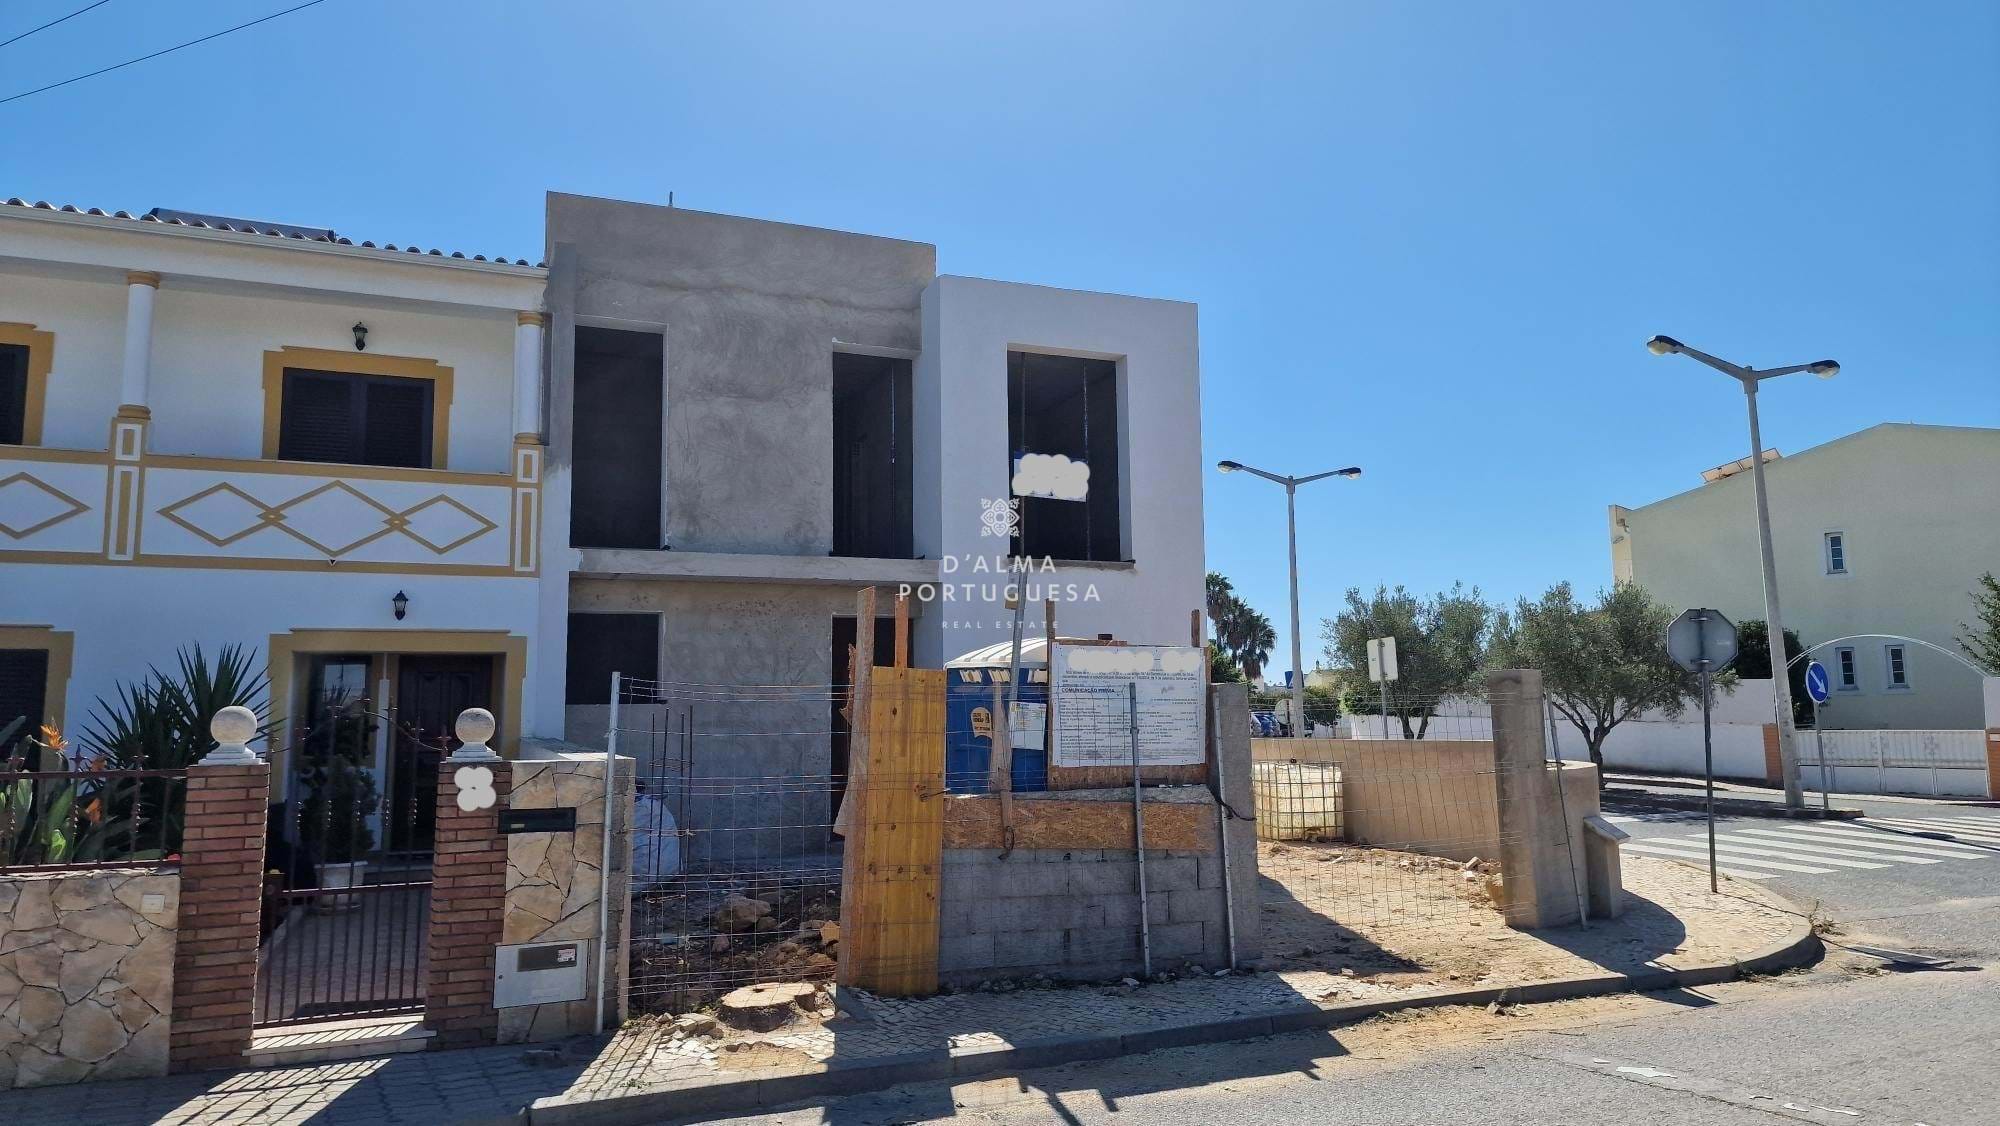 Villa de 3 dormitorios, villa sin condominio, villa nueva, villa de 3 dormitorios cerca del centro, villa en Túnez